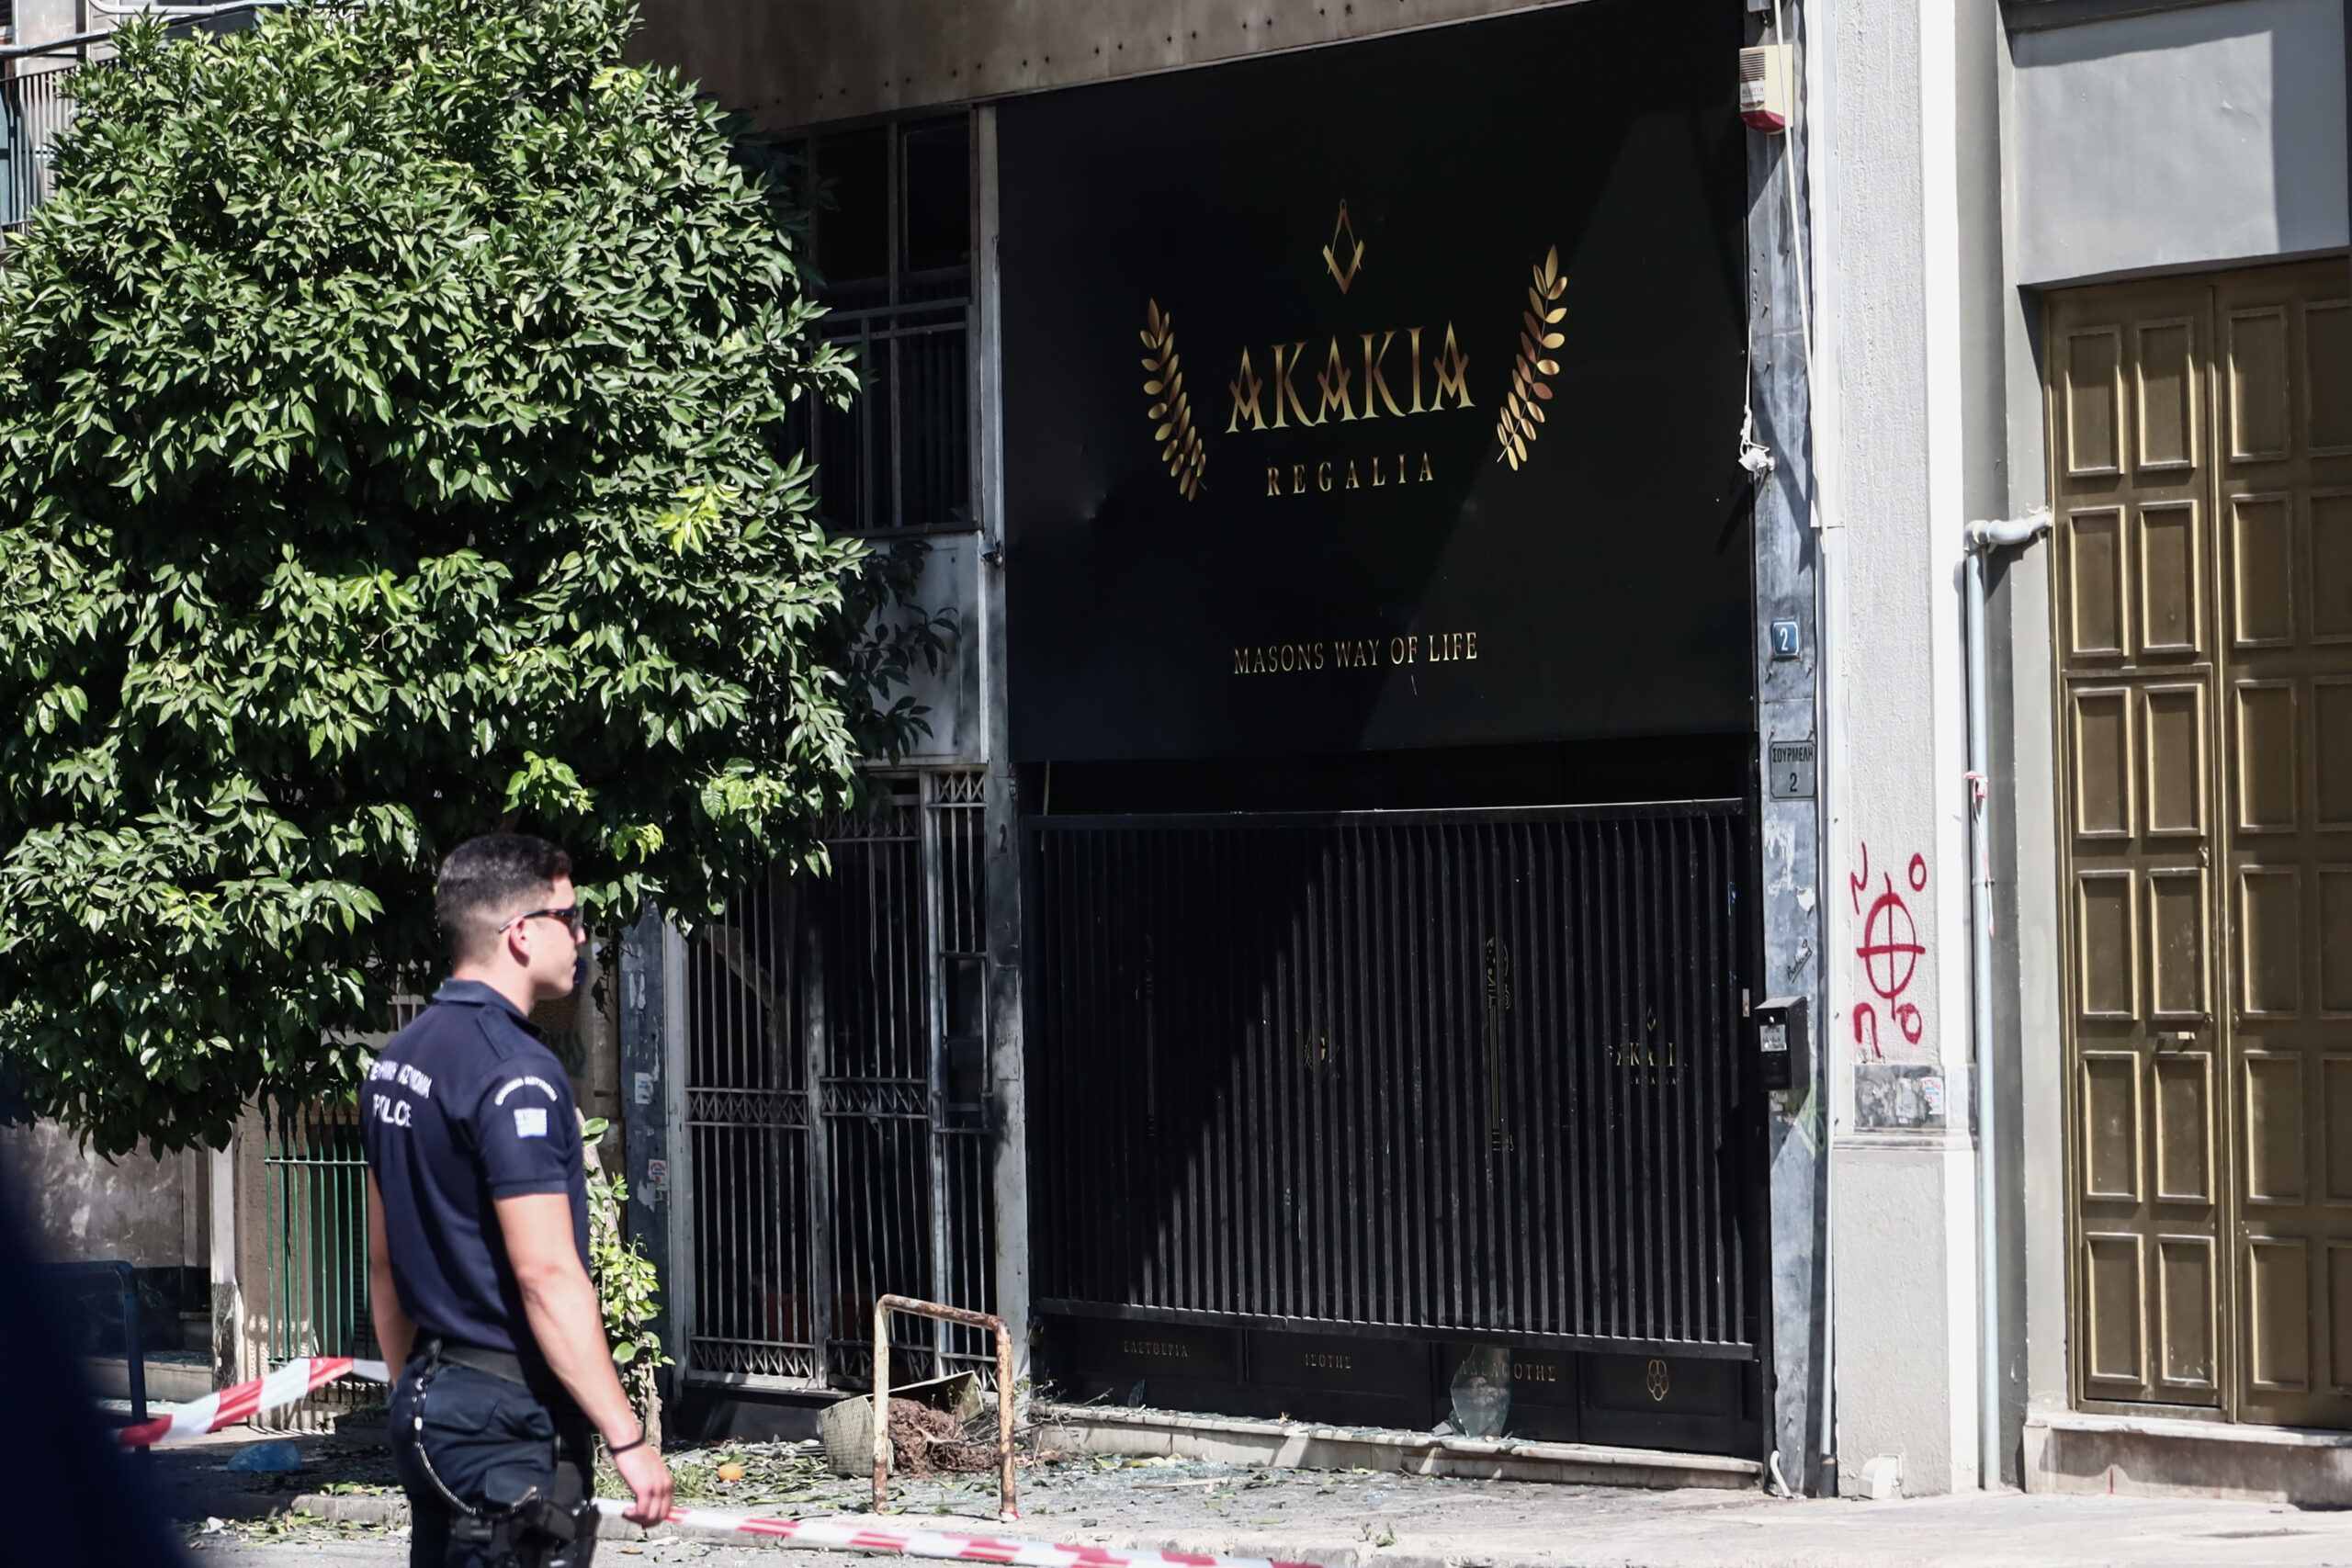 Αχαρνών: Άγνωστος προειδοποίησε για την έκρηξη με τηλεφώνημα στο 112 – Τι λένε αυτόπτες μάρτυρες στην ΕΡΤ